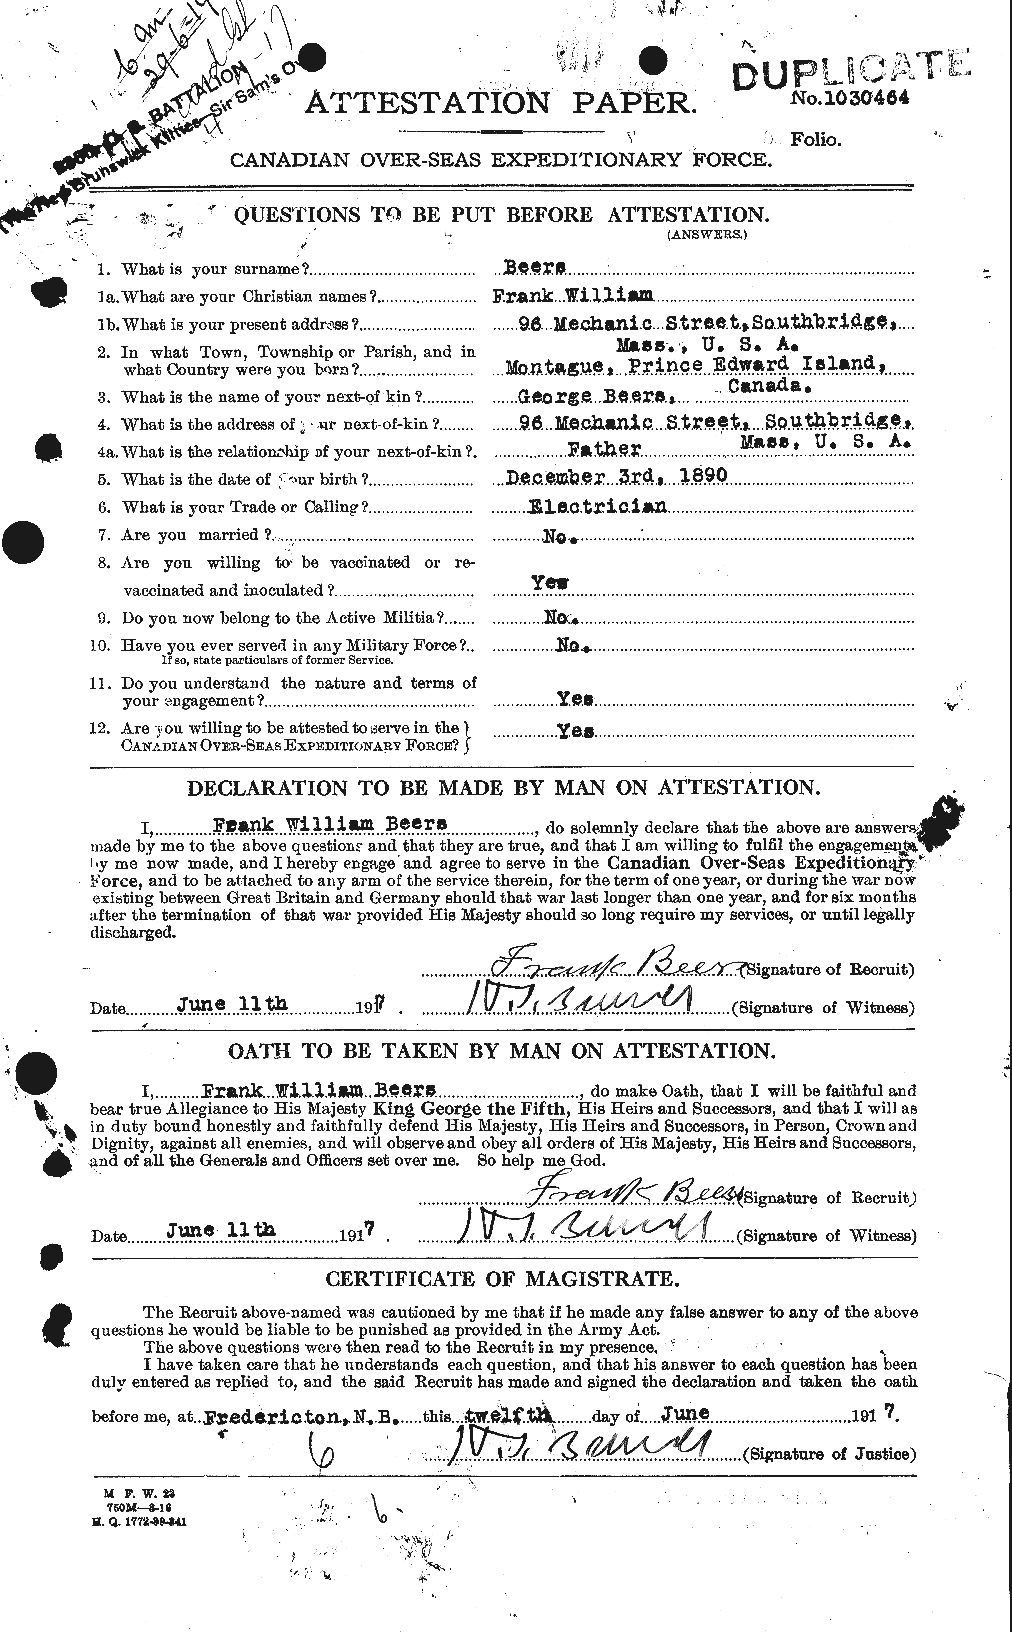 Dossiers du Personnel de la Première Guerre mondiale - CEC 241597a